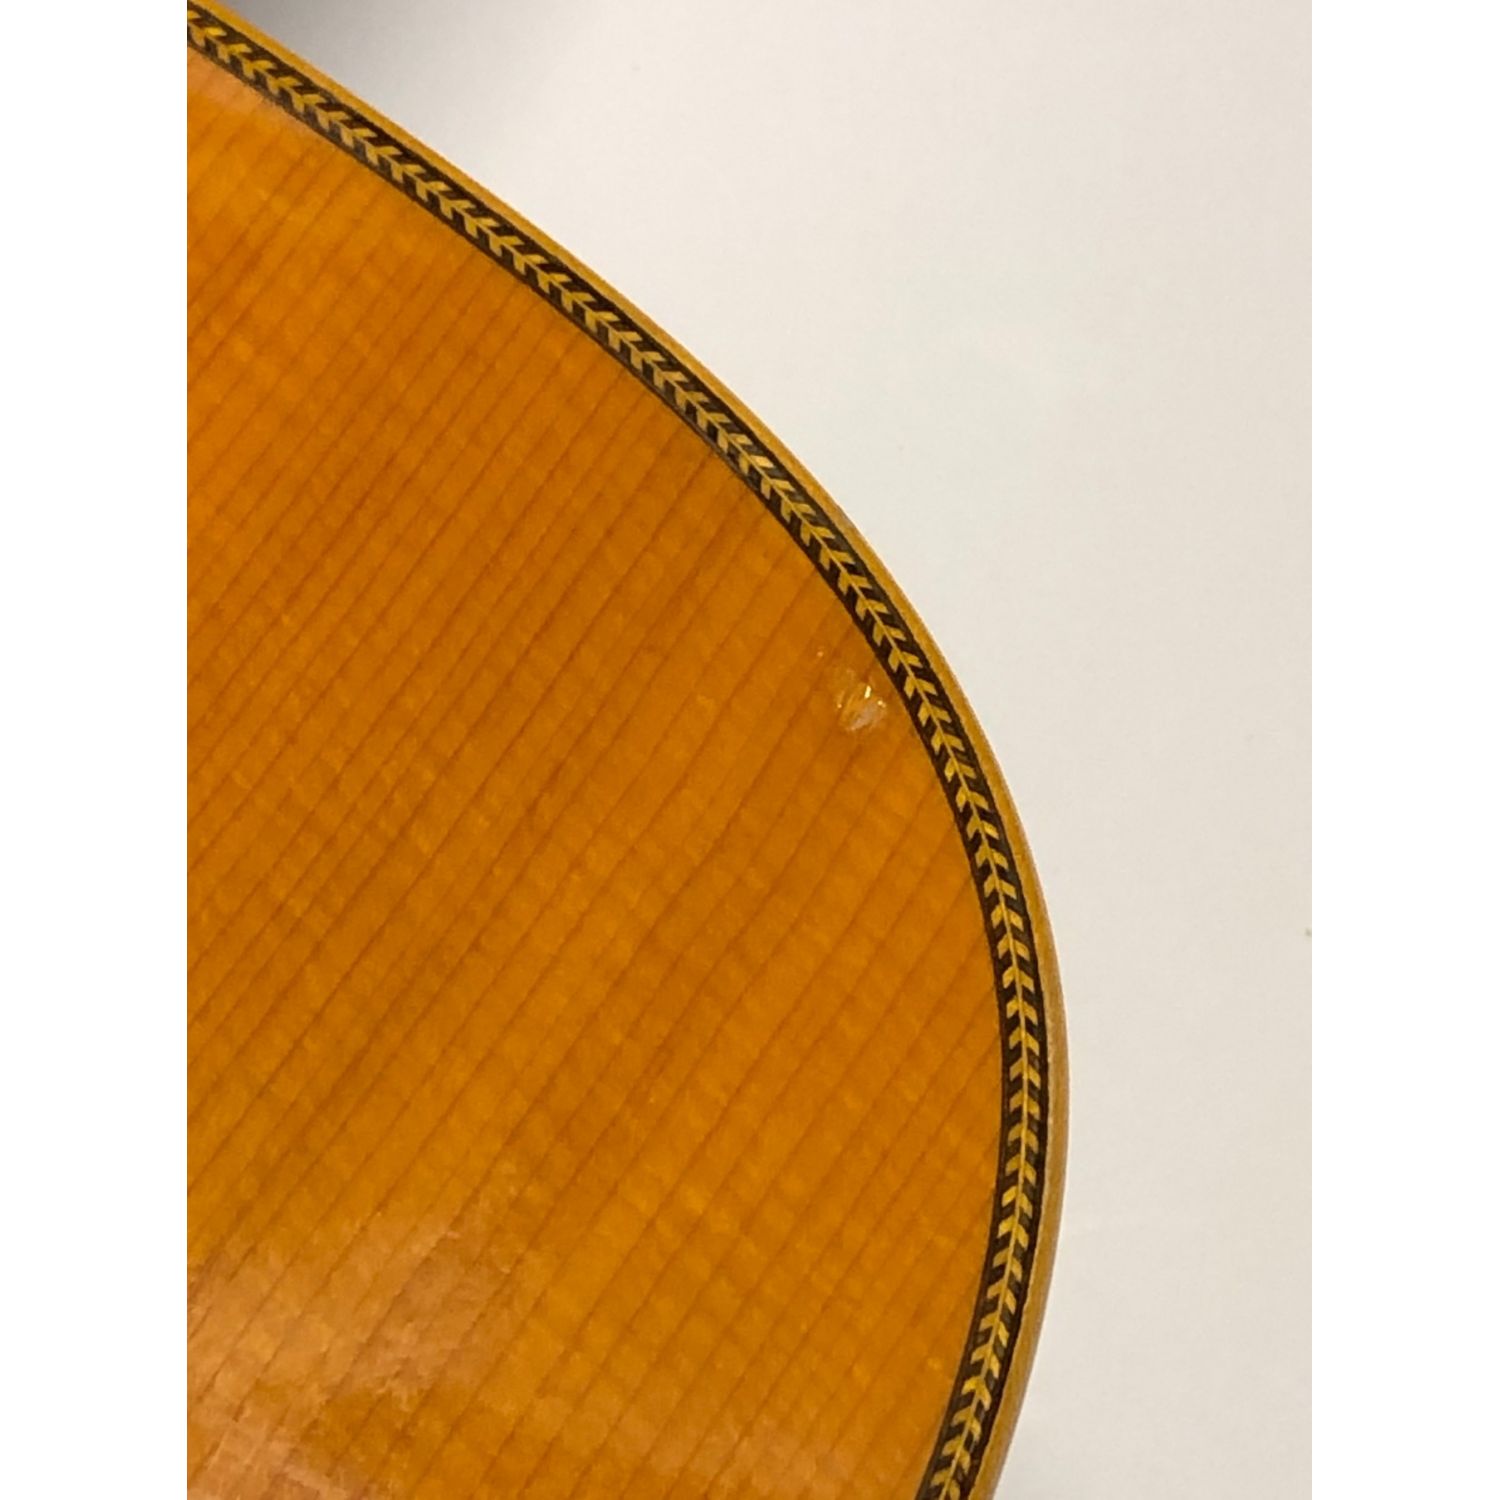 ASTURIAS (アストリアス) アコースティックギター 670-1 トラスロッド 